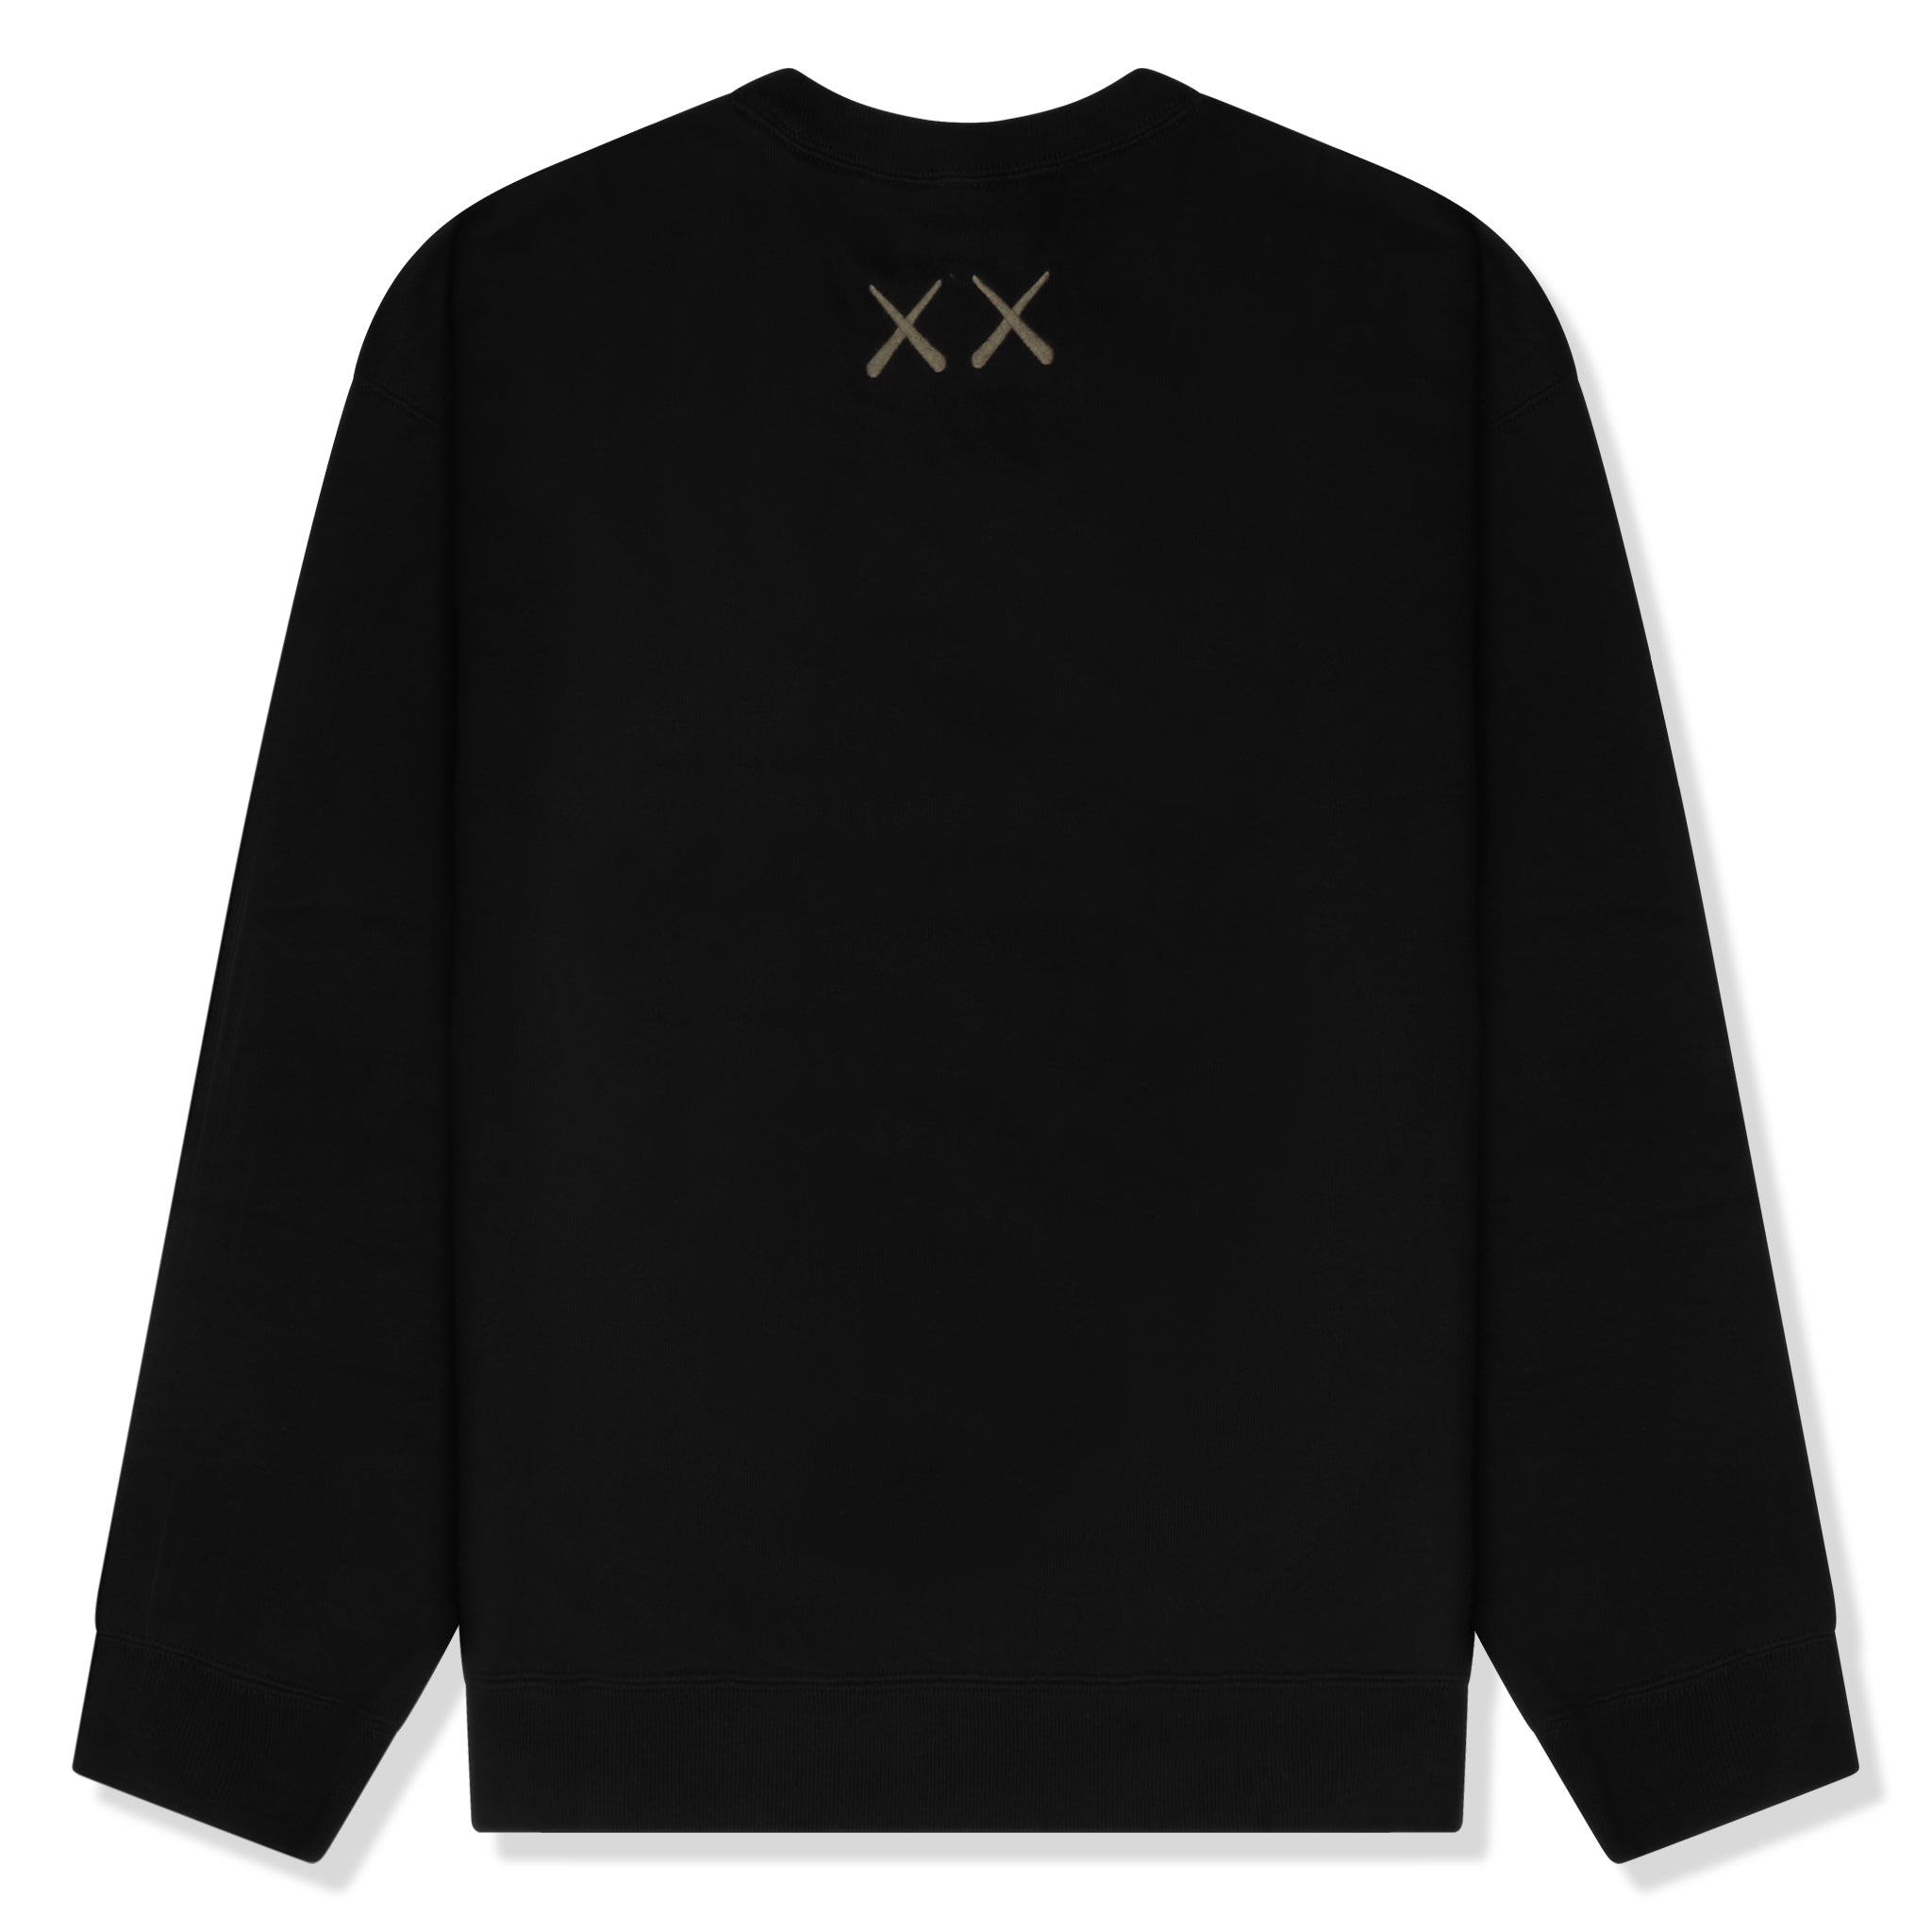 Back view of Kaws x Uniqlo UT Graphic Black Sweatshirt 467773